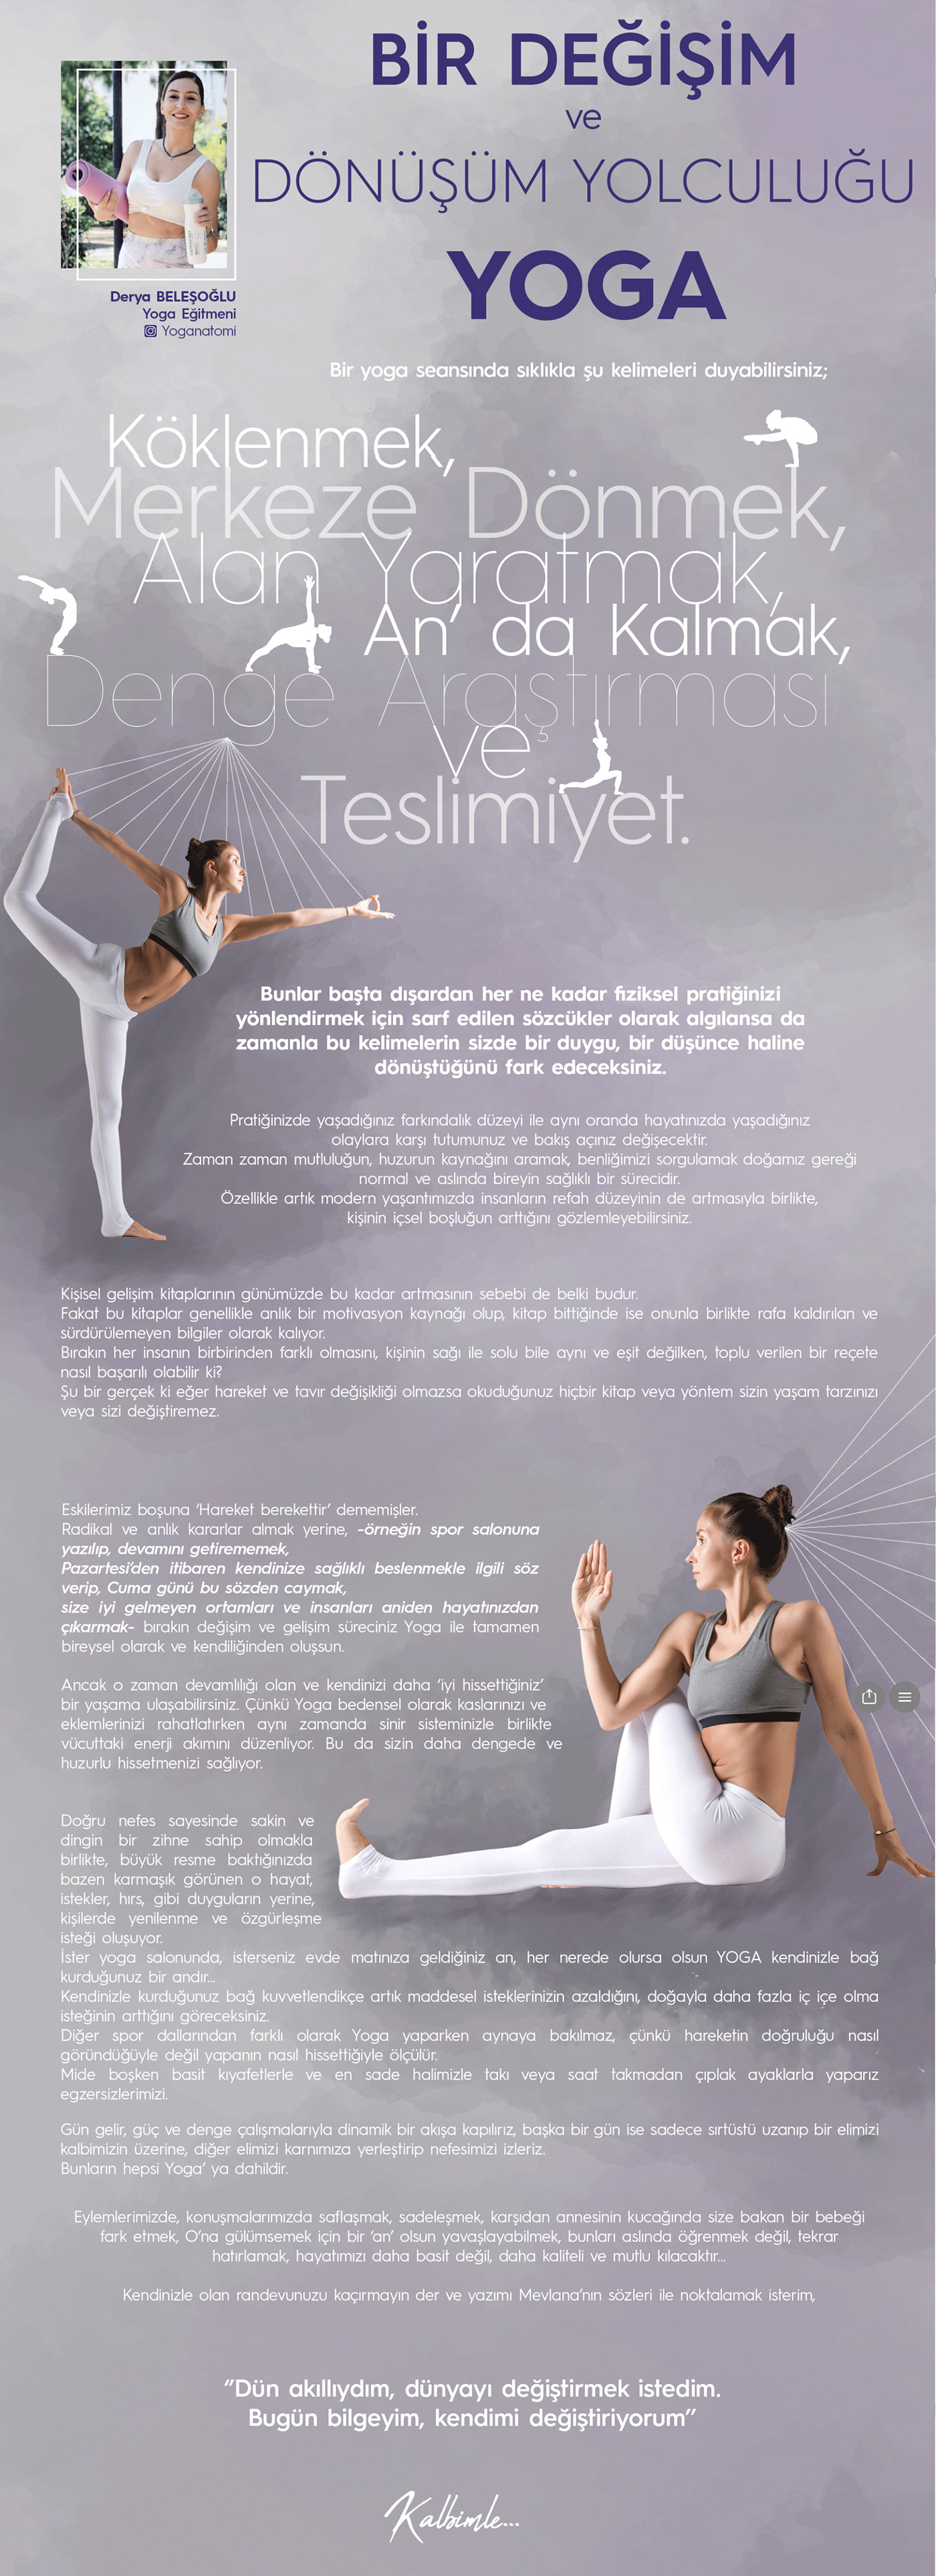 Adobe Photoshop Creative Design Creativity dergi tasarımı grafik tasarım Magazine design turkish design